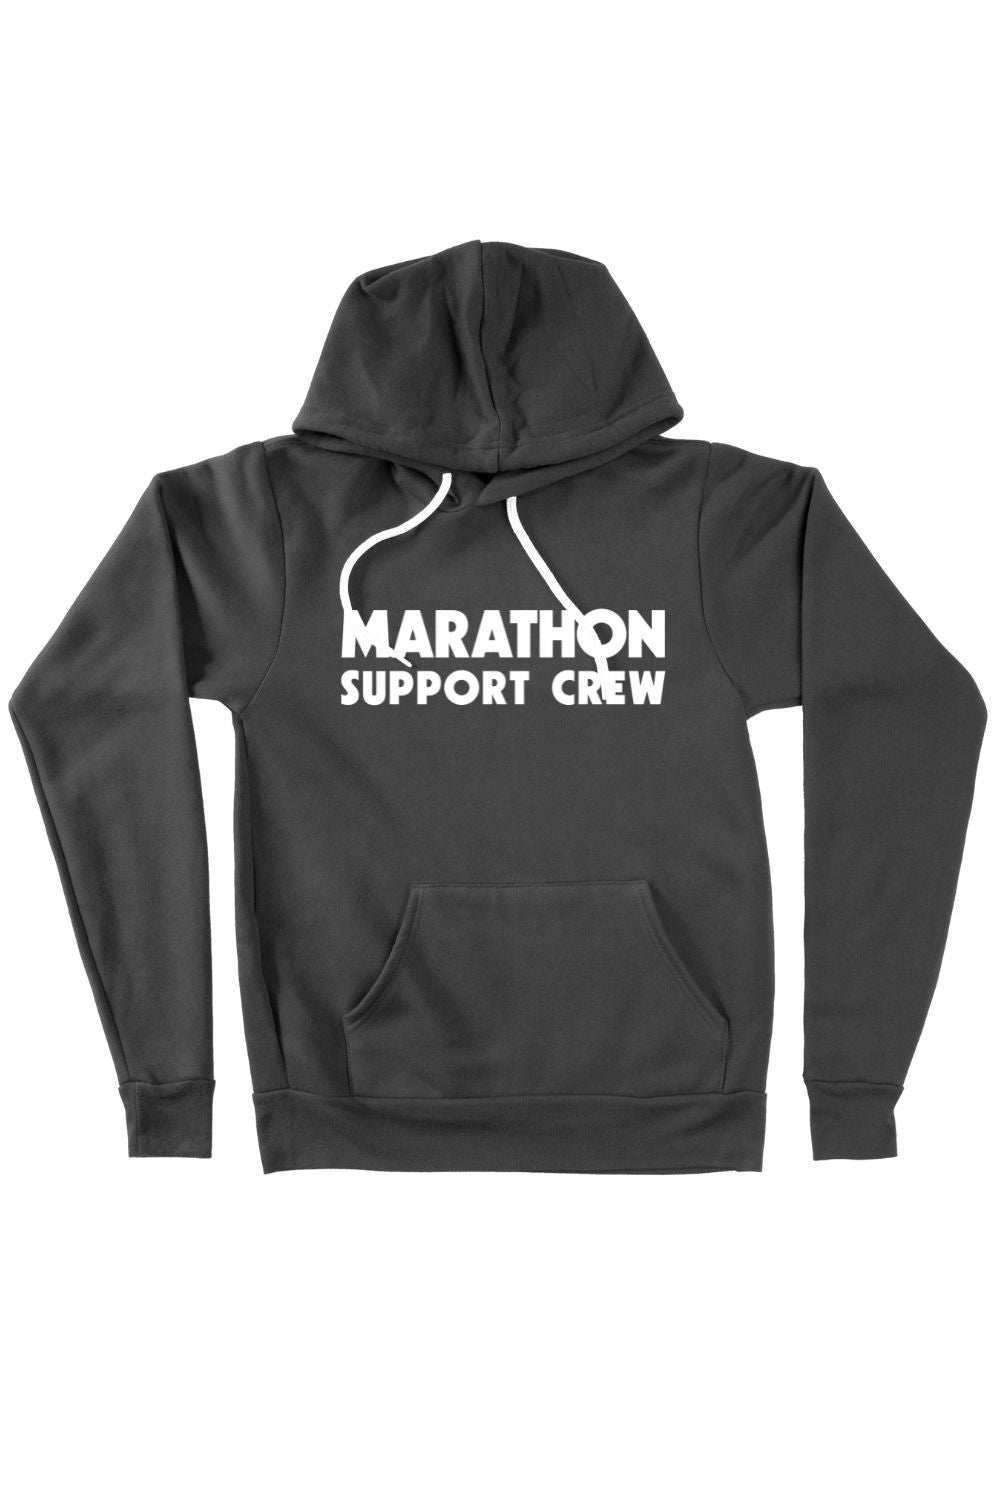 Marathon Support Crew Hoodie